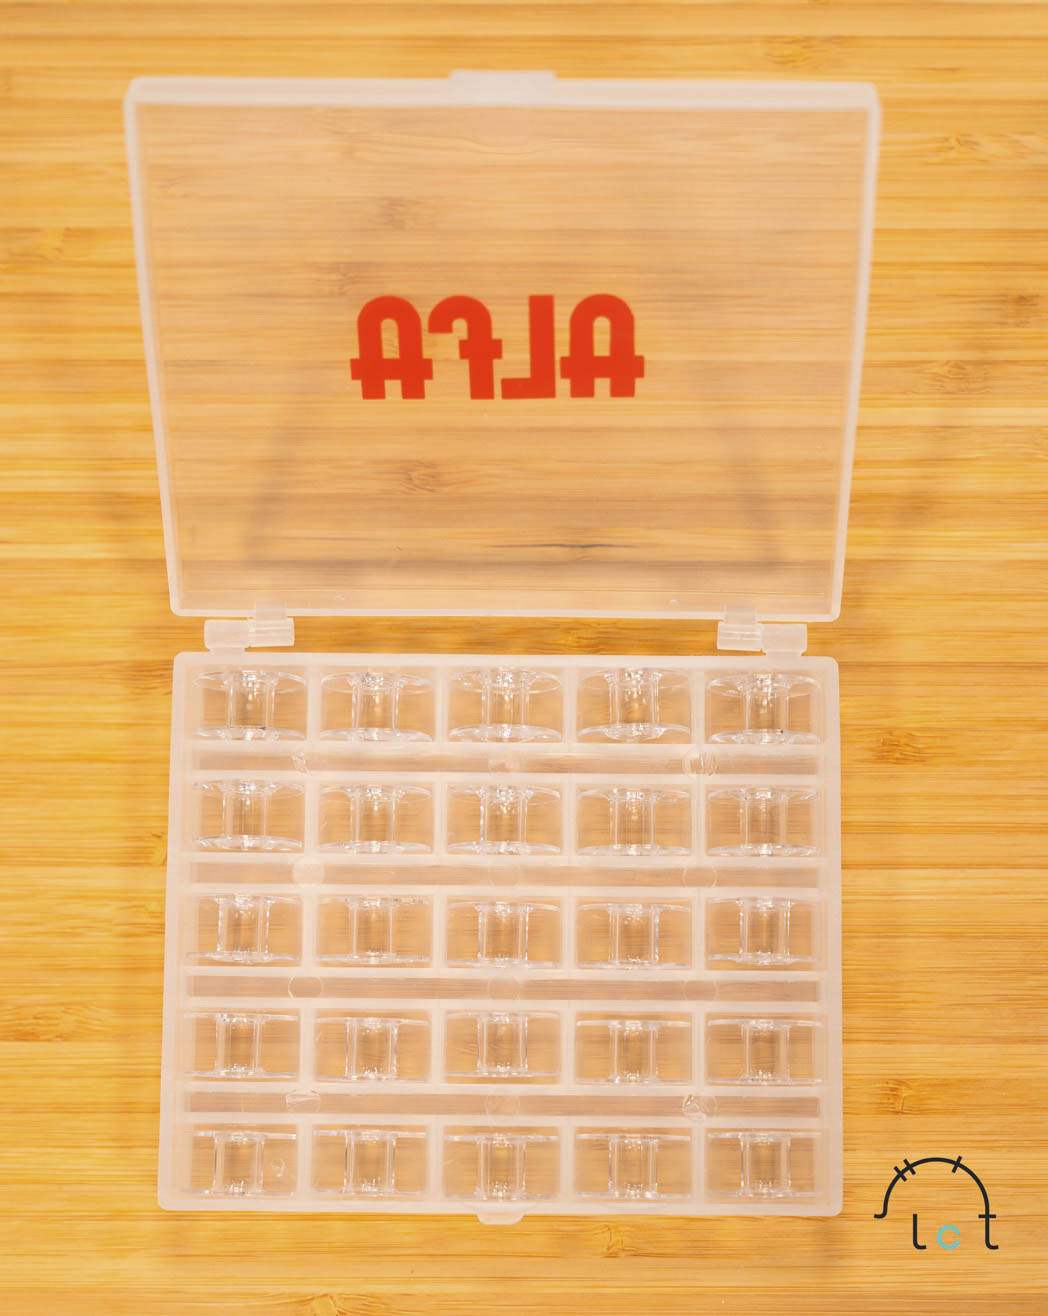 Mercería Online: Caja de canillas Alfa, incluye 25 canillas de plástico